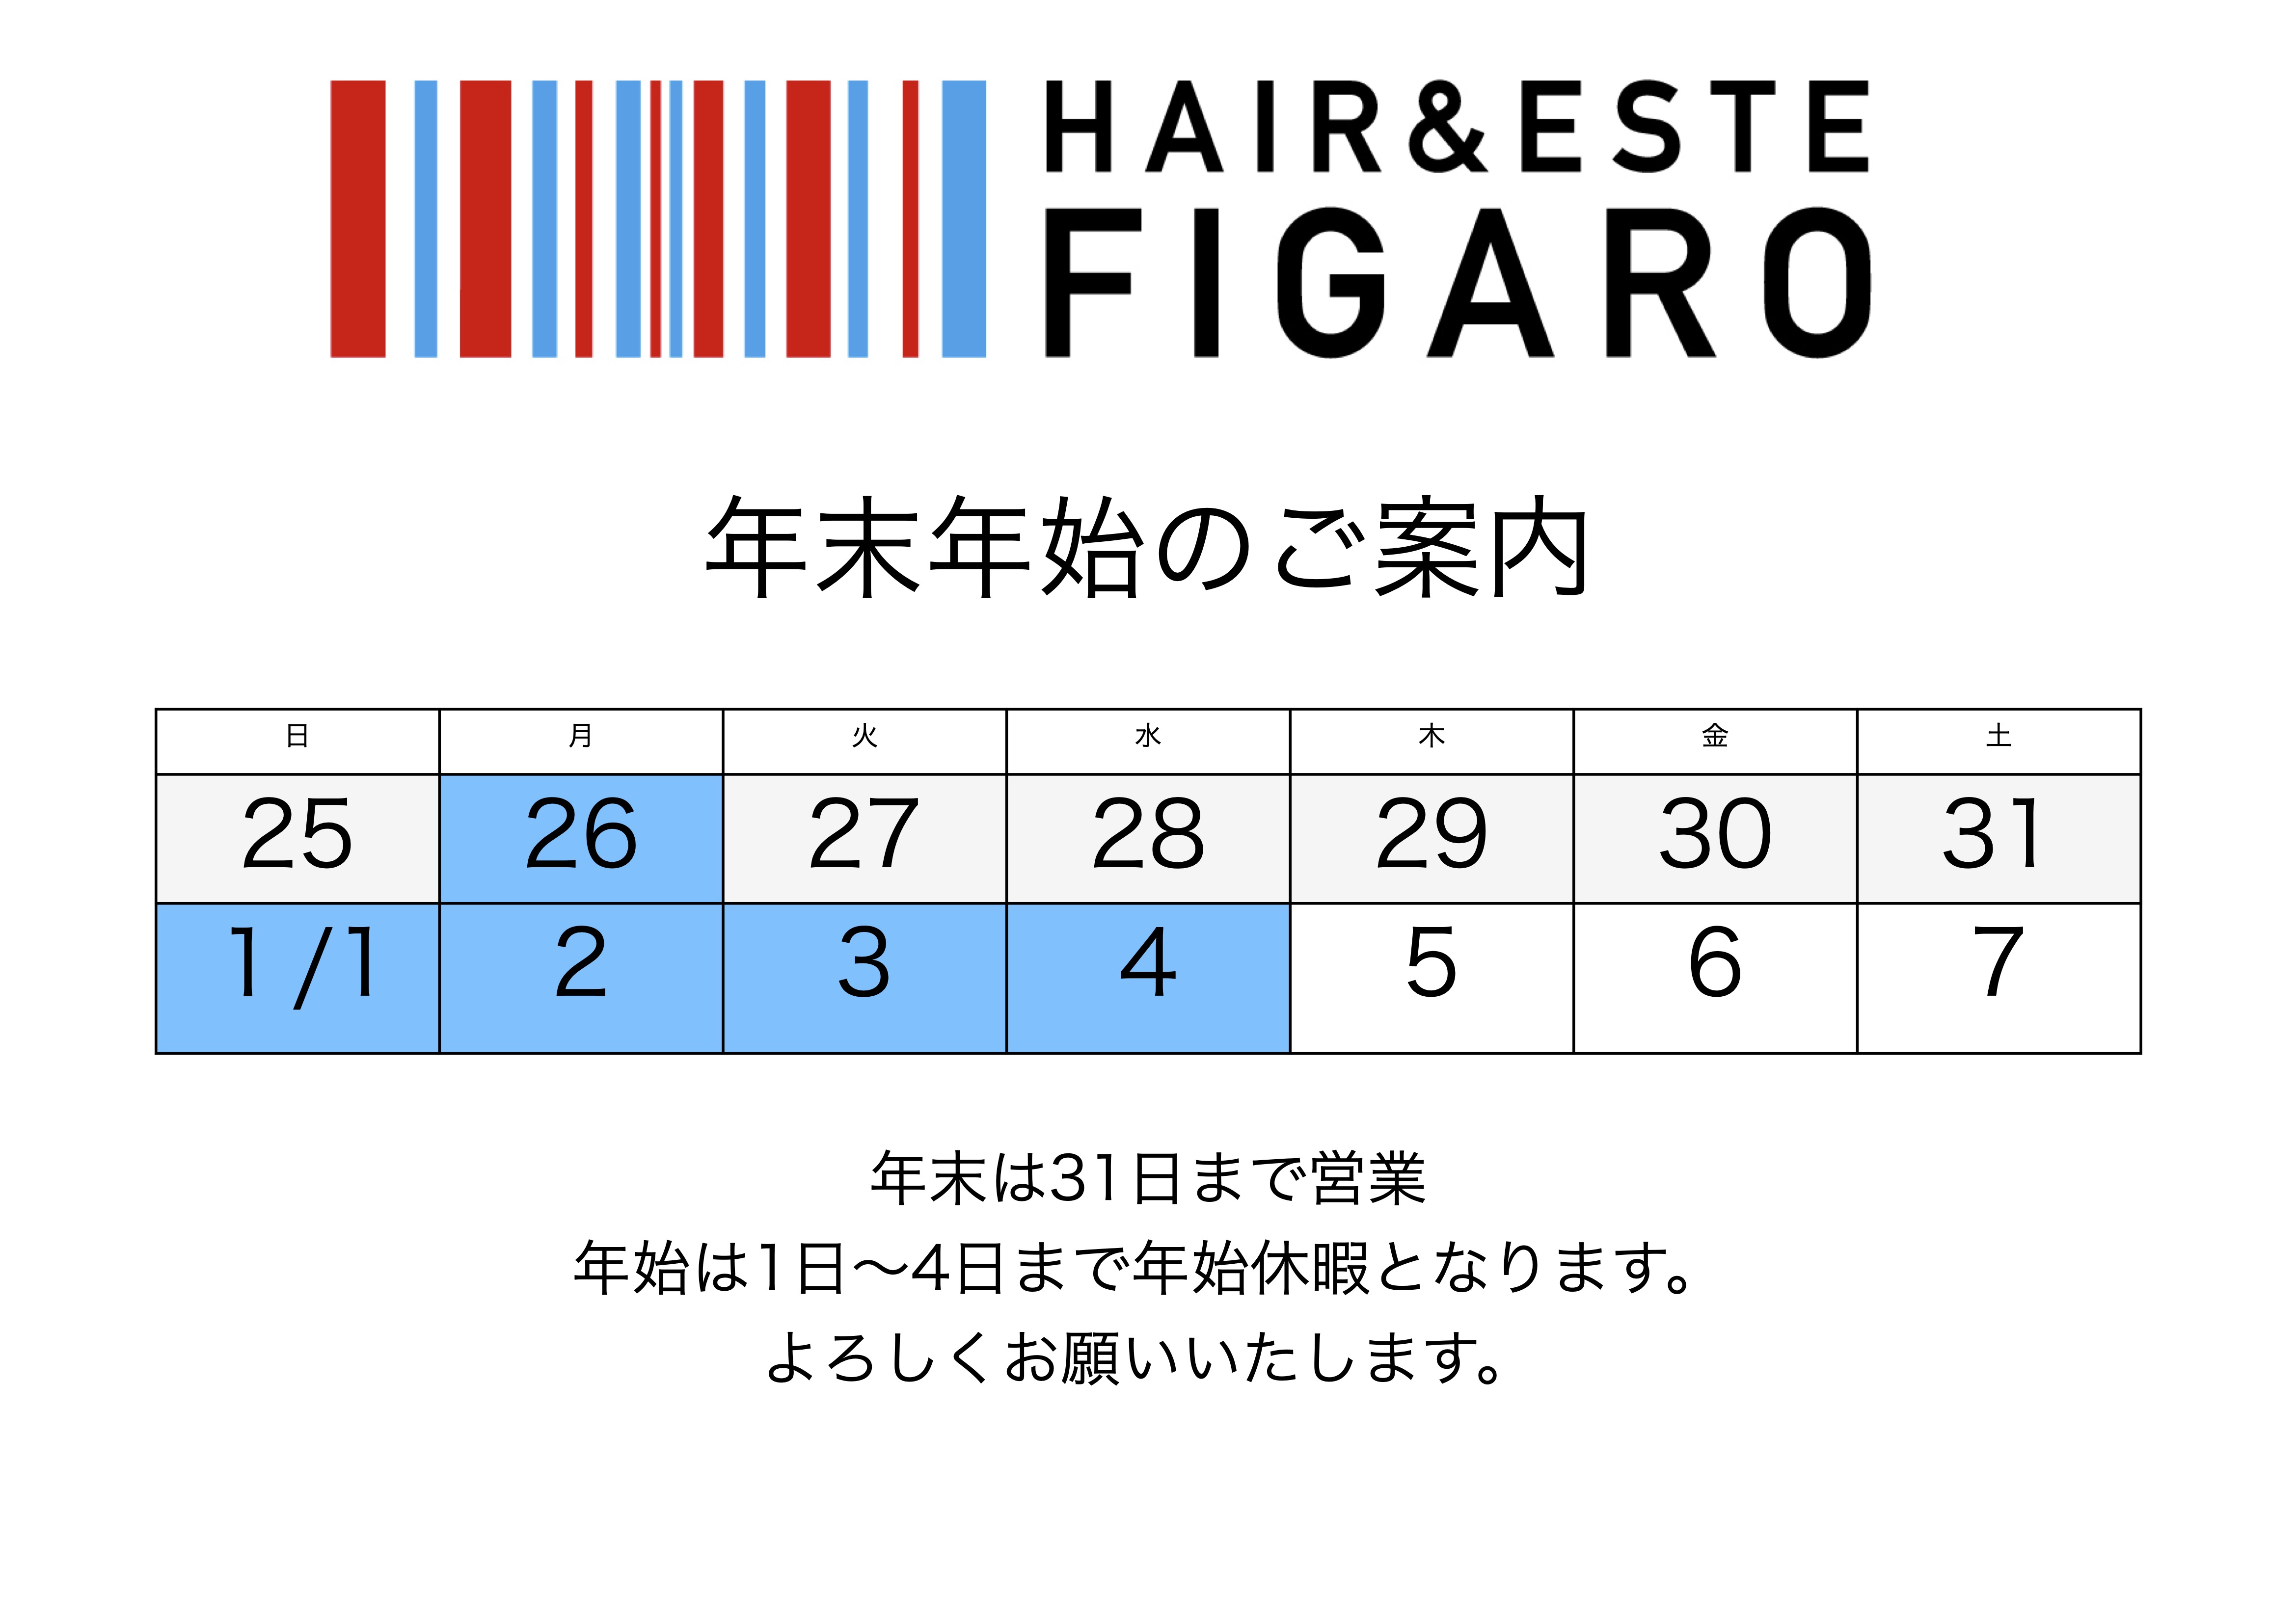 http://figaro-hair.com/blog/2022%E5%B9%B4%E6%9C%AB%E5%B9%B4%E5%A7%8B.jpg